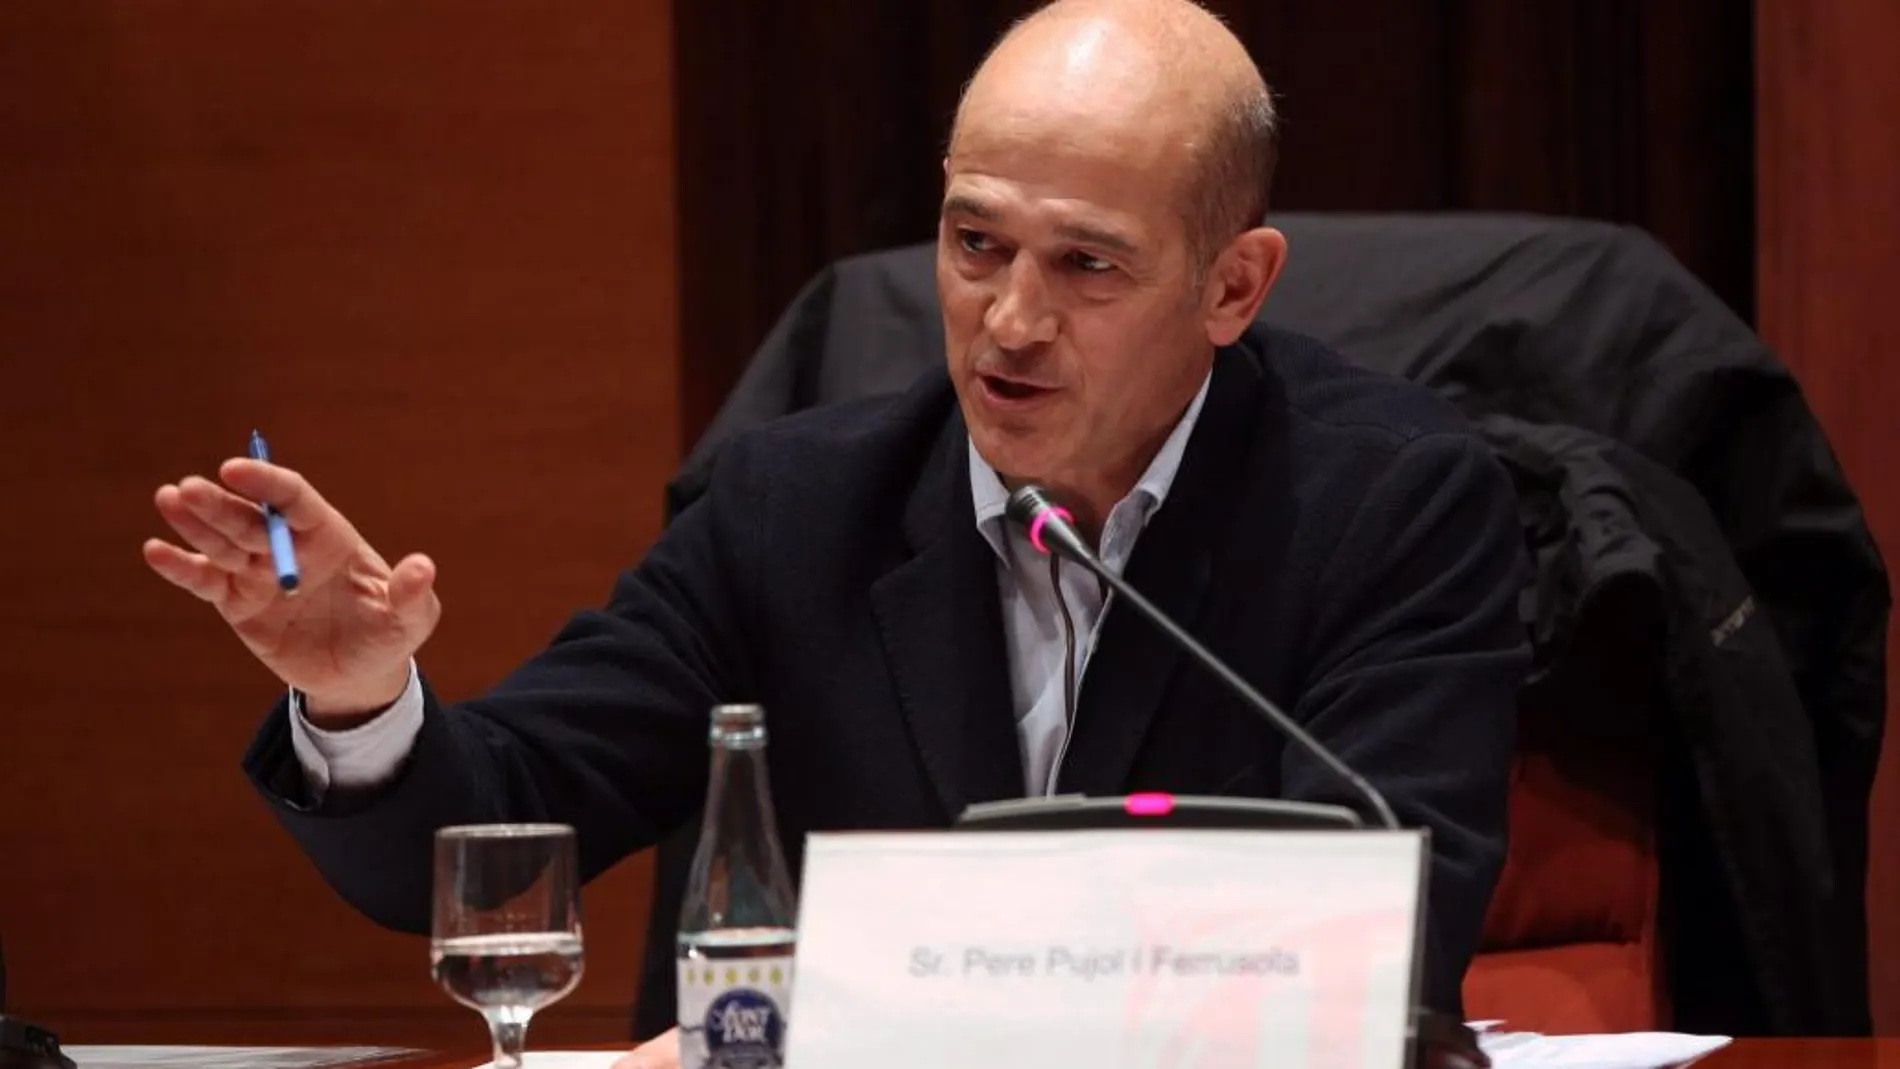 Pere Pujol, hijo del expresidente de la Generalitat, Jordi Pujol, en su comparecencia en la comisión sobre fraude fiscal que se está celebrando esta tarde en el Parlament de Cataluña.